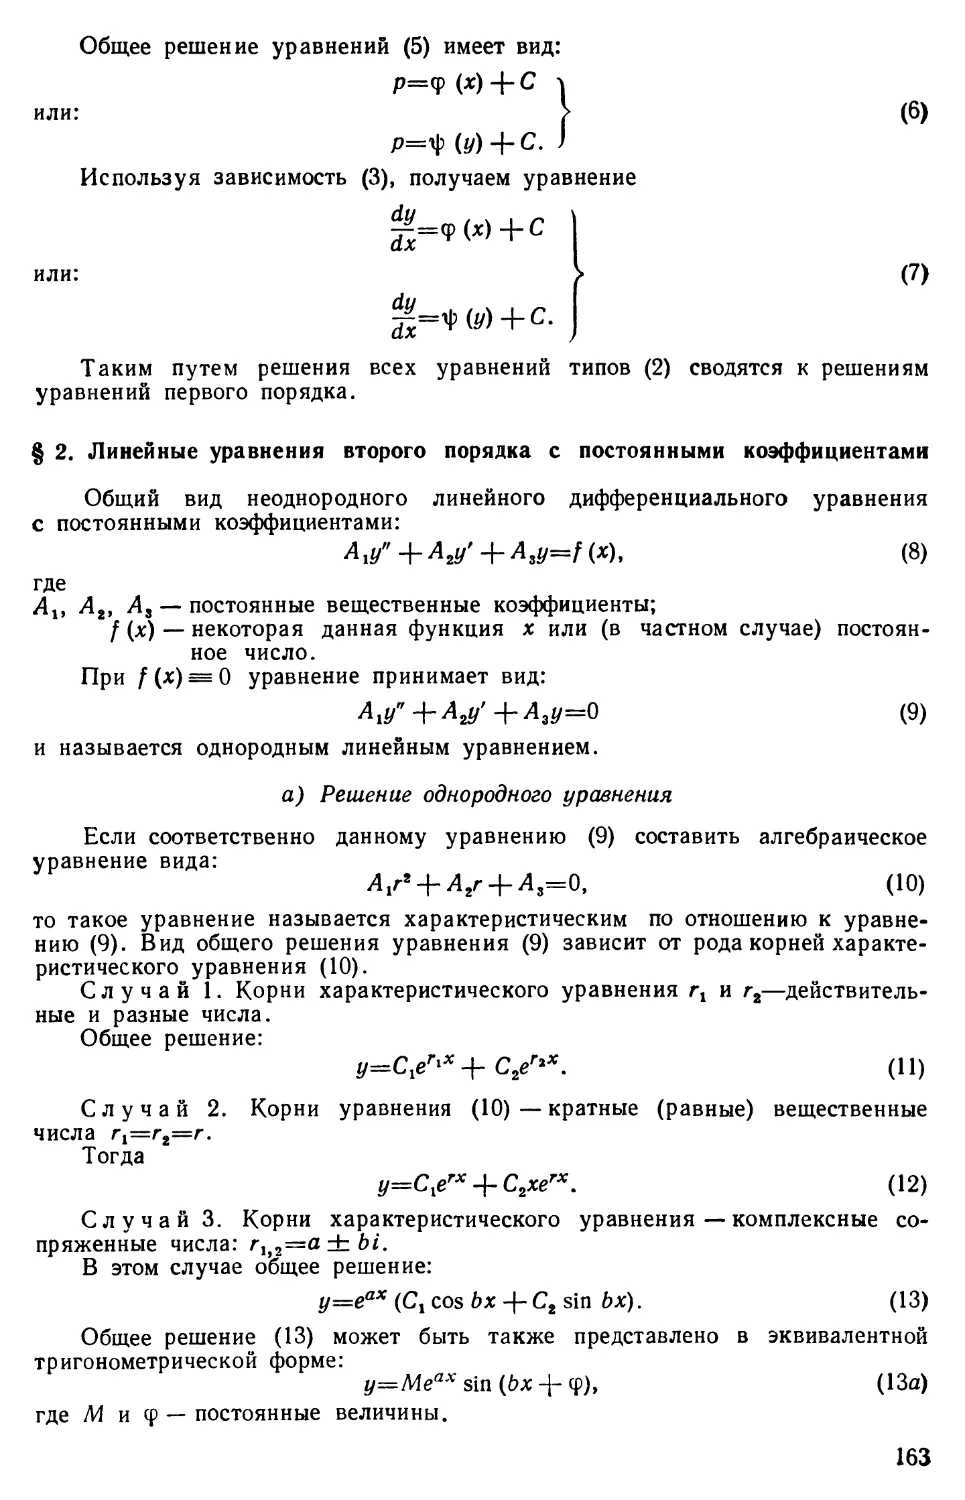 § 2. Линейные уравнения второго порядка с постоянными коэффициентами